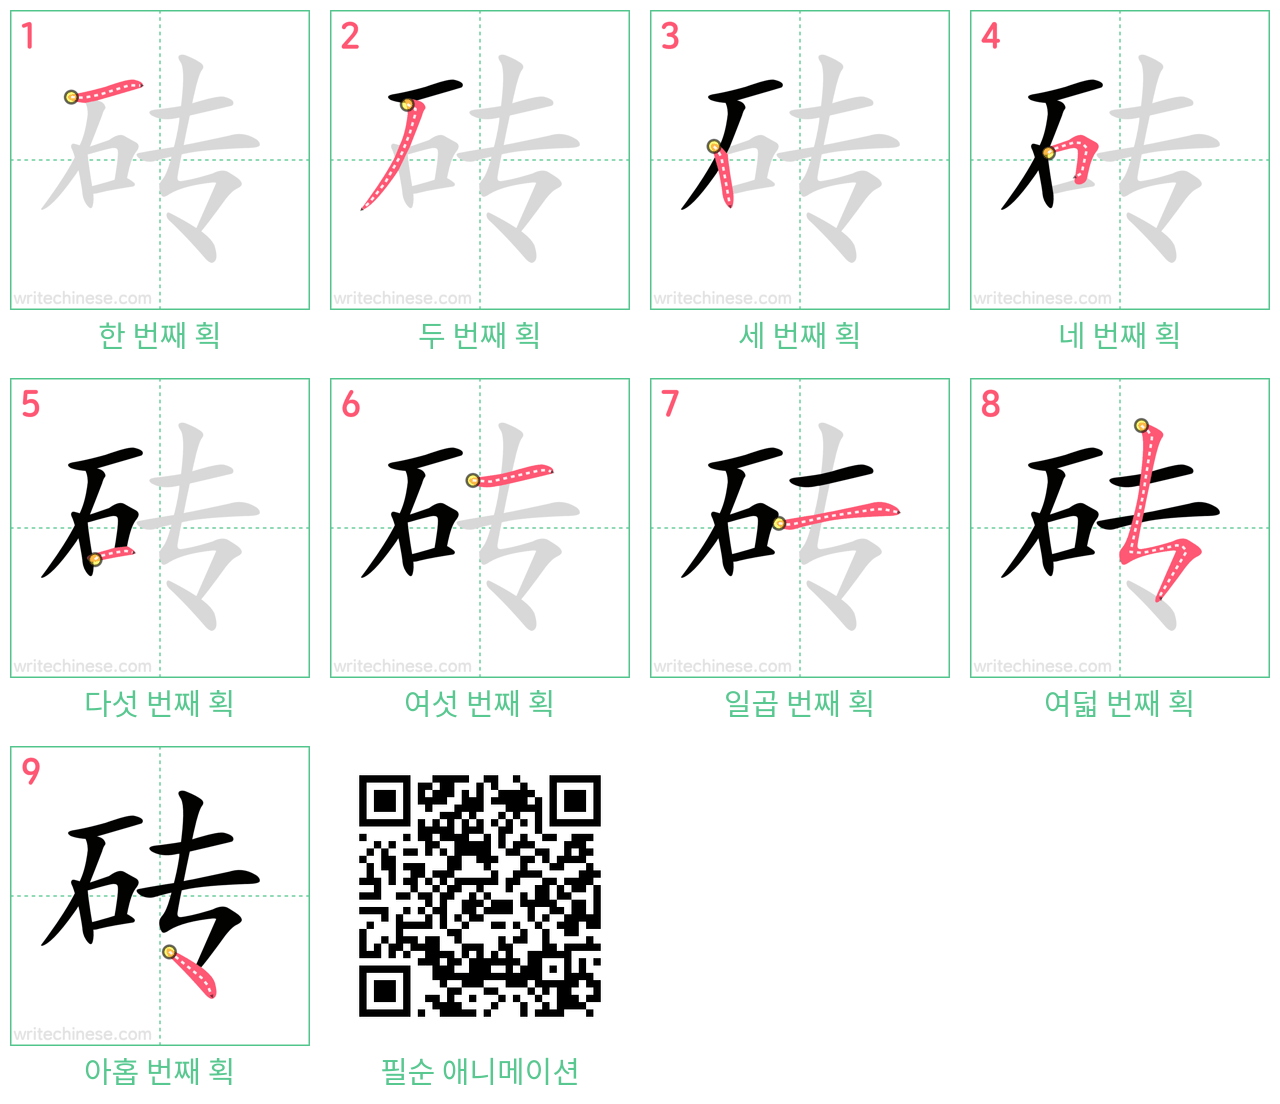 砖 step-by-step stroke order diagrams